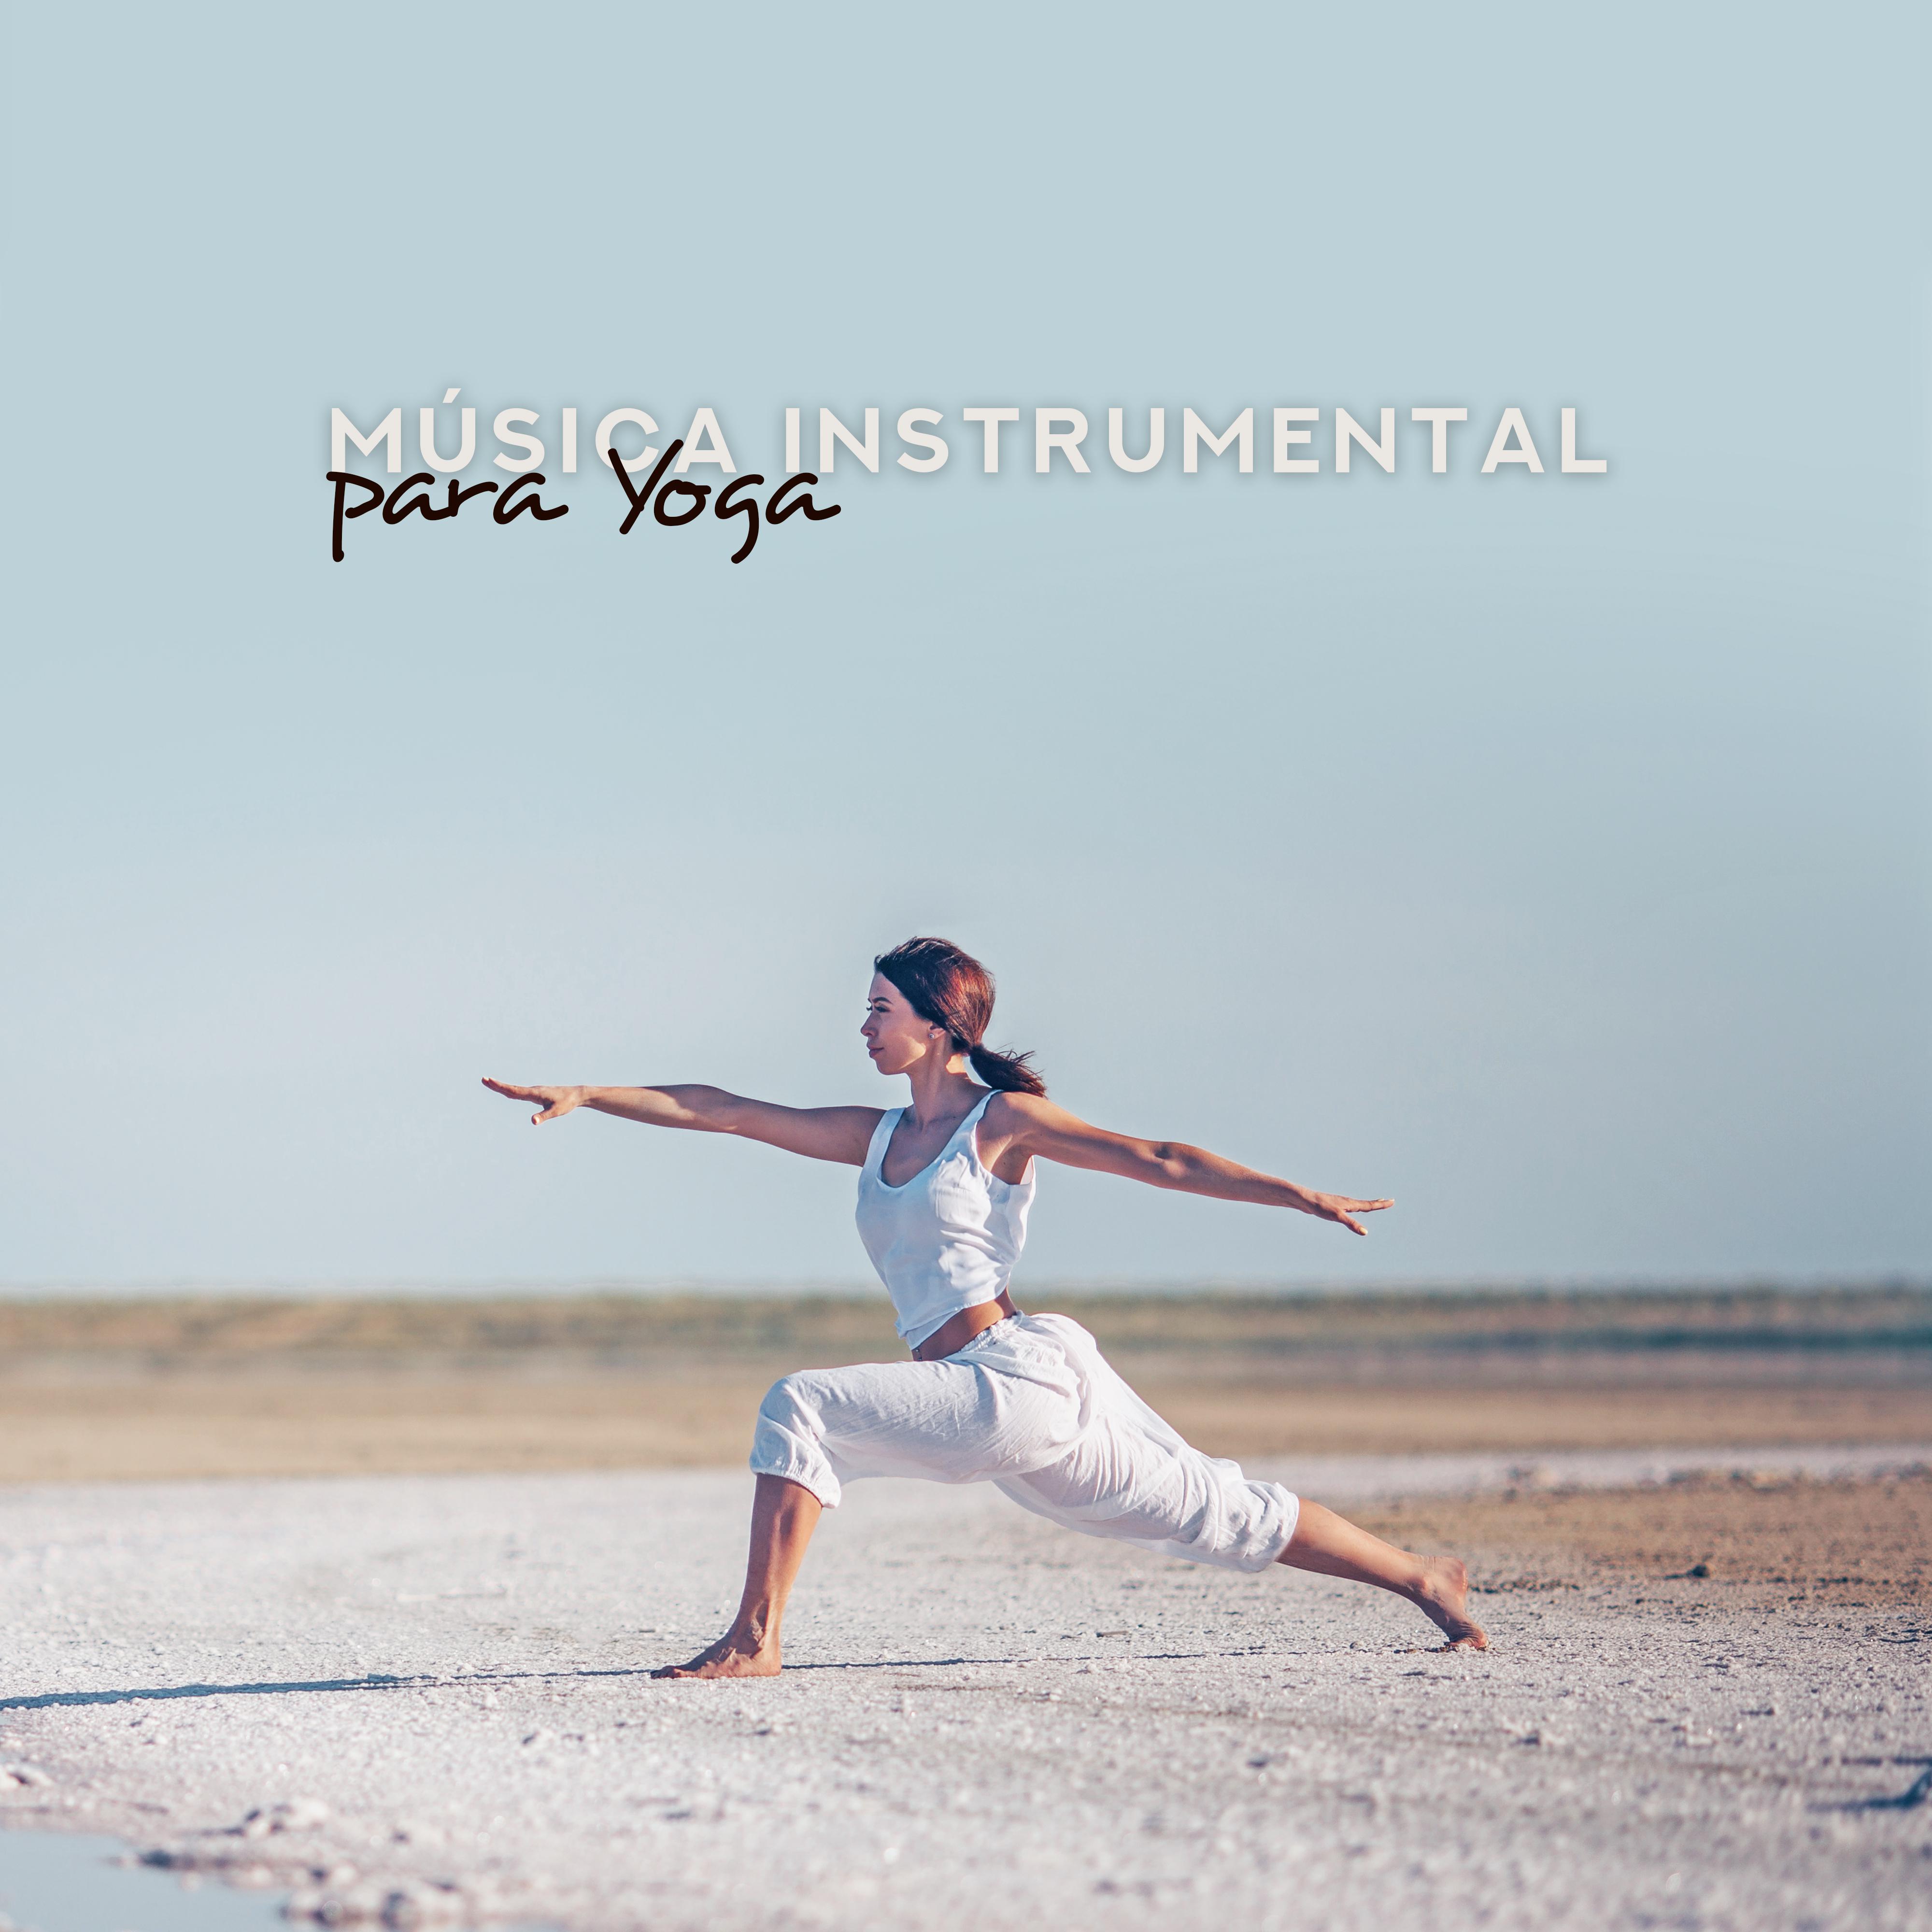 Música Instrumental para Yoga - Meditação Profunda para Relaxamento, Meditar, Yoga Meditação, Serenidade Zen, Mente Pura, Harmonia Profunda